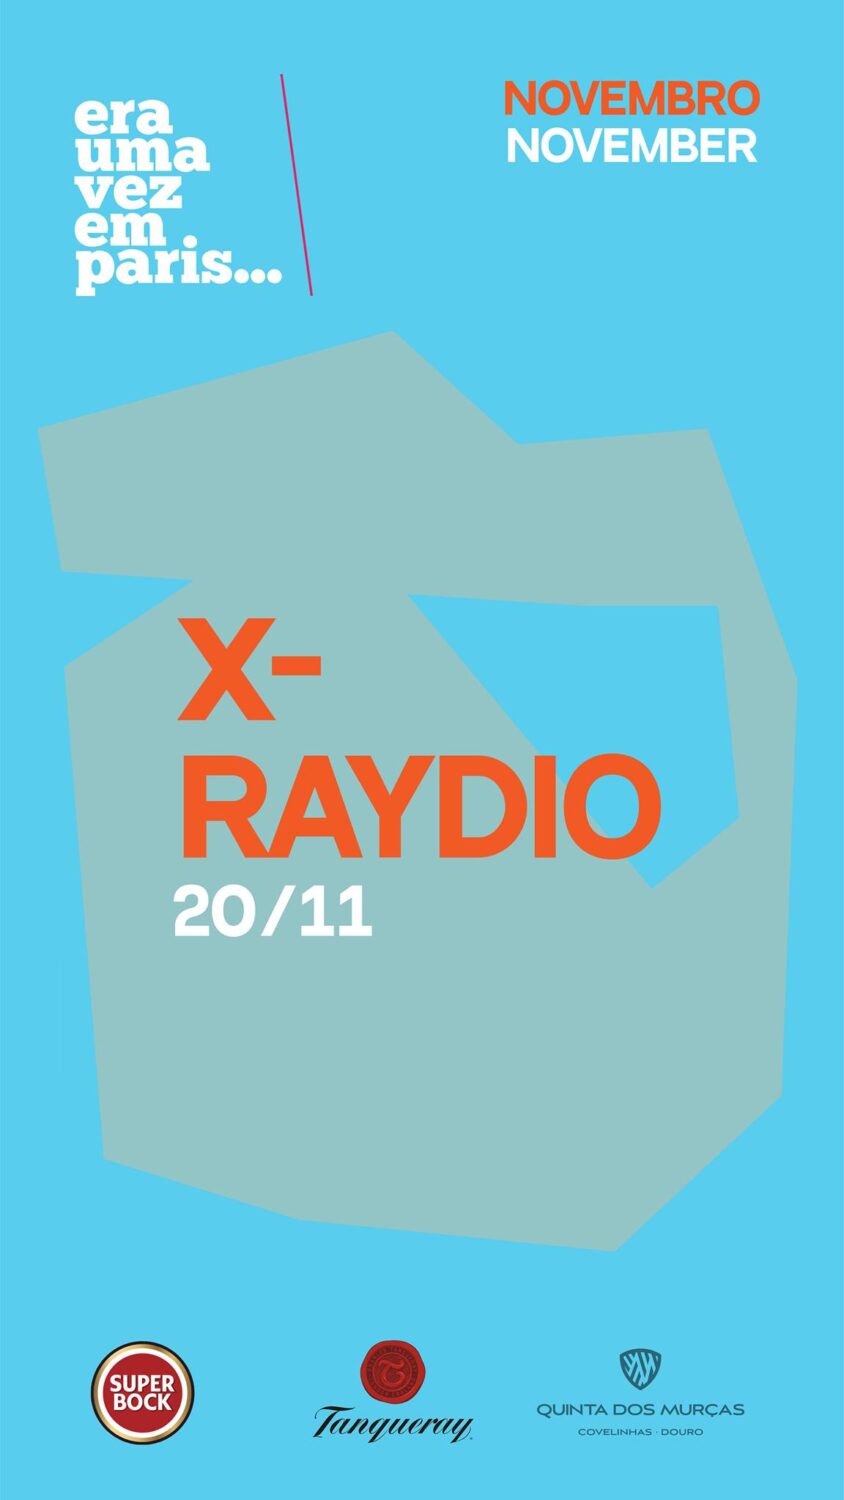 X-Raydio - Era uma vez em Paris